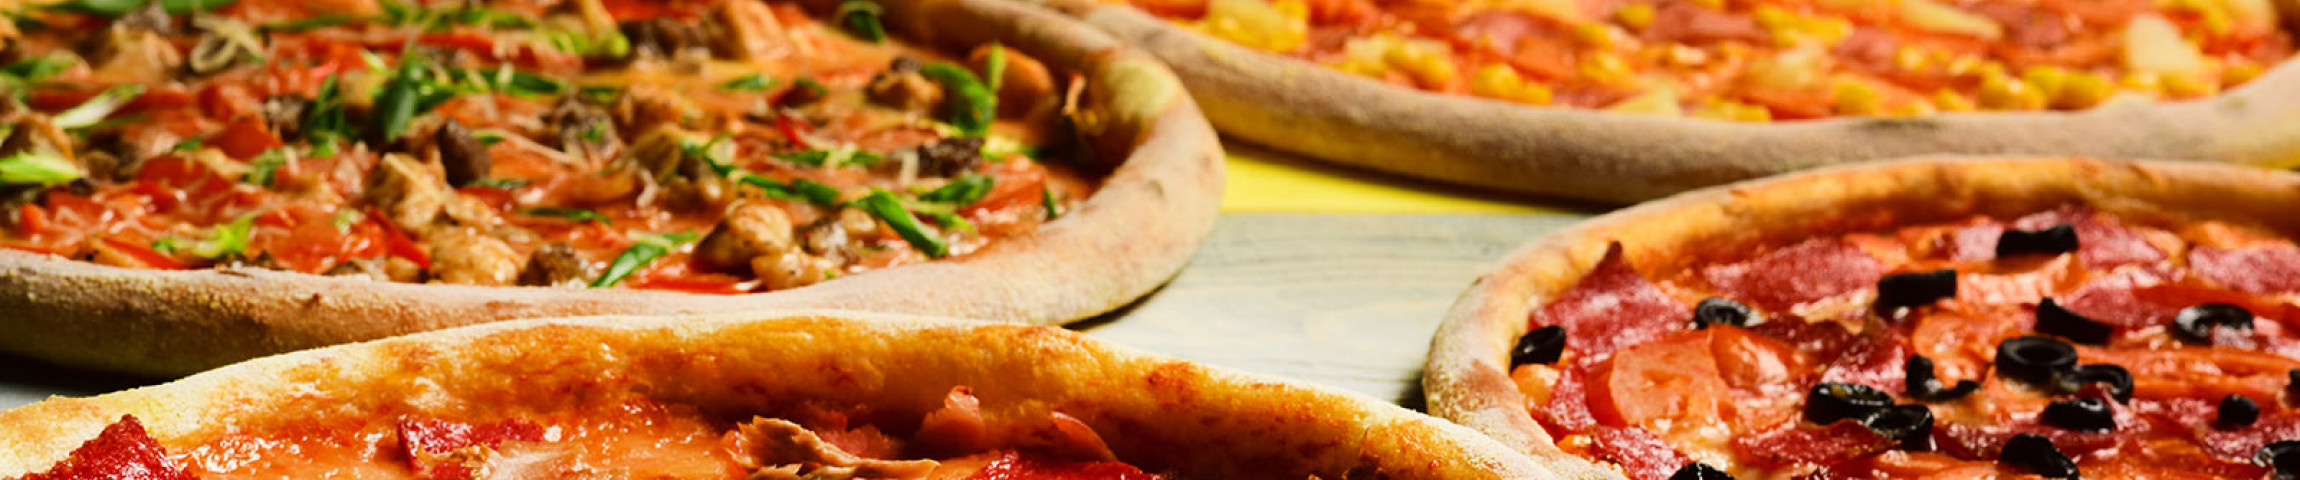 Babylons Pizza header image